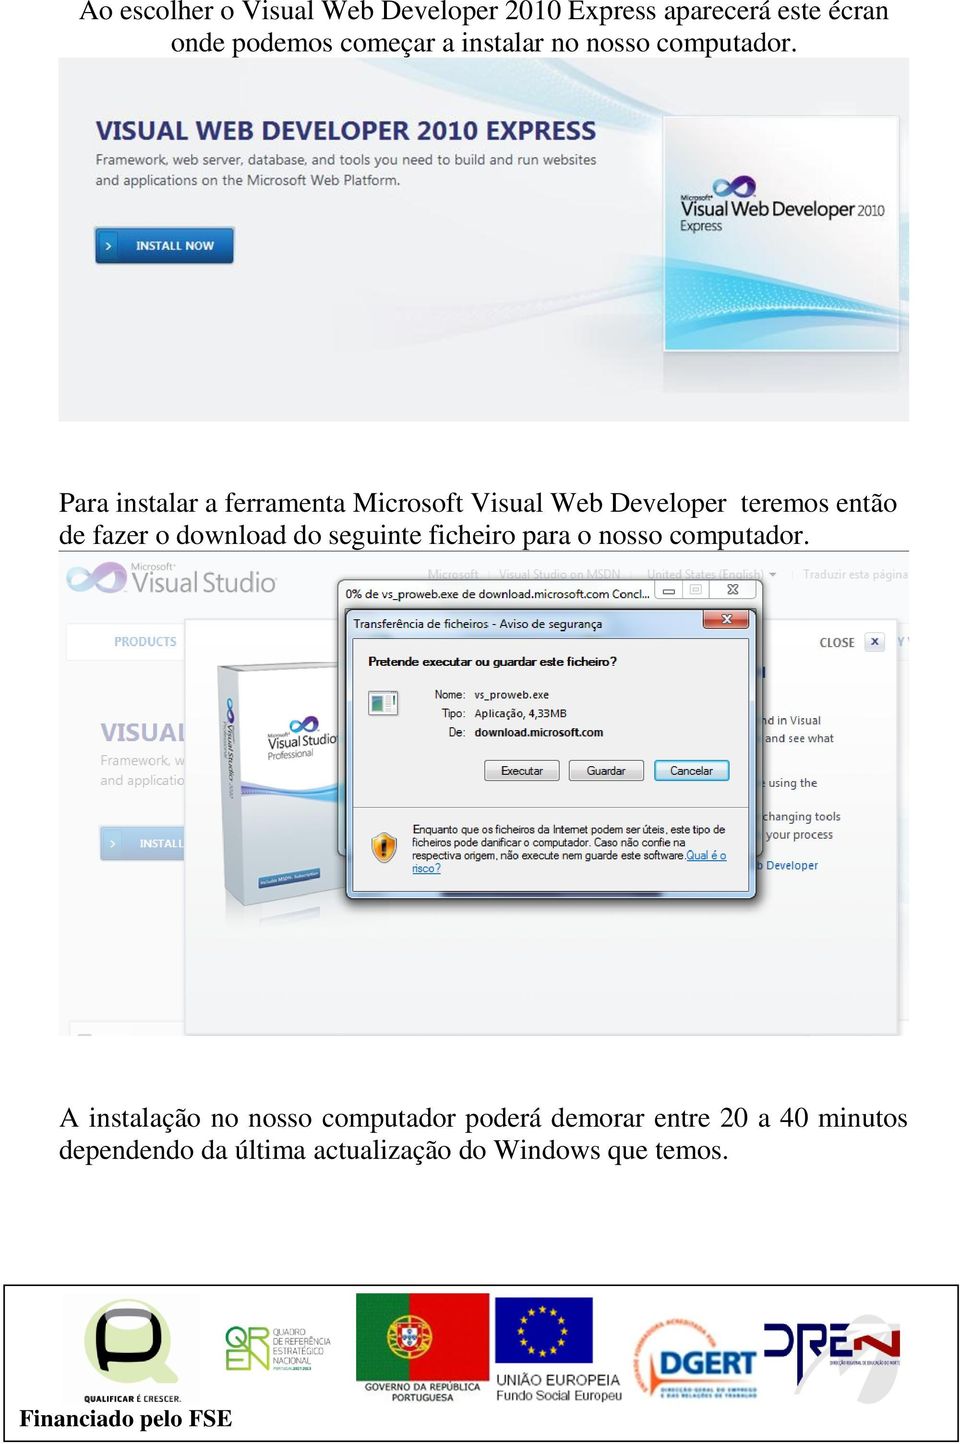 Para instalar a ferramenta Microsoft Visual Web Developer teremos então de fazer o download do